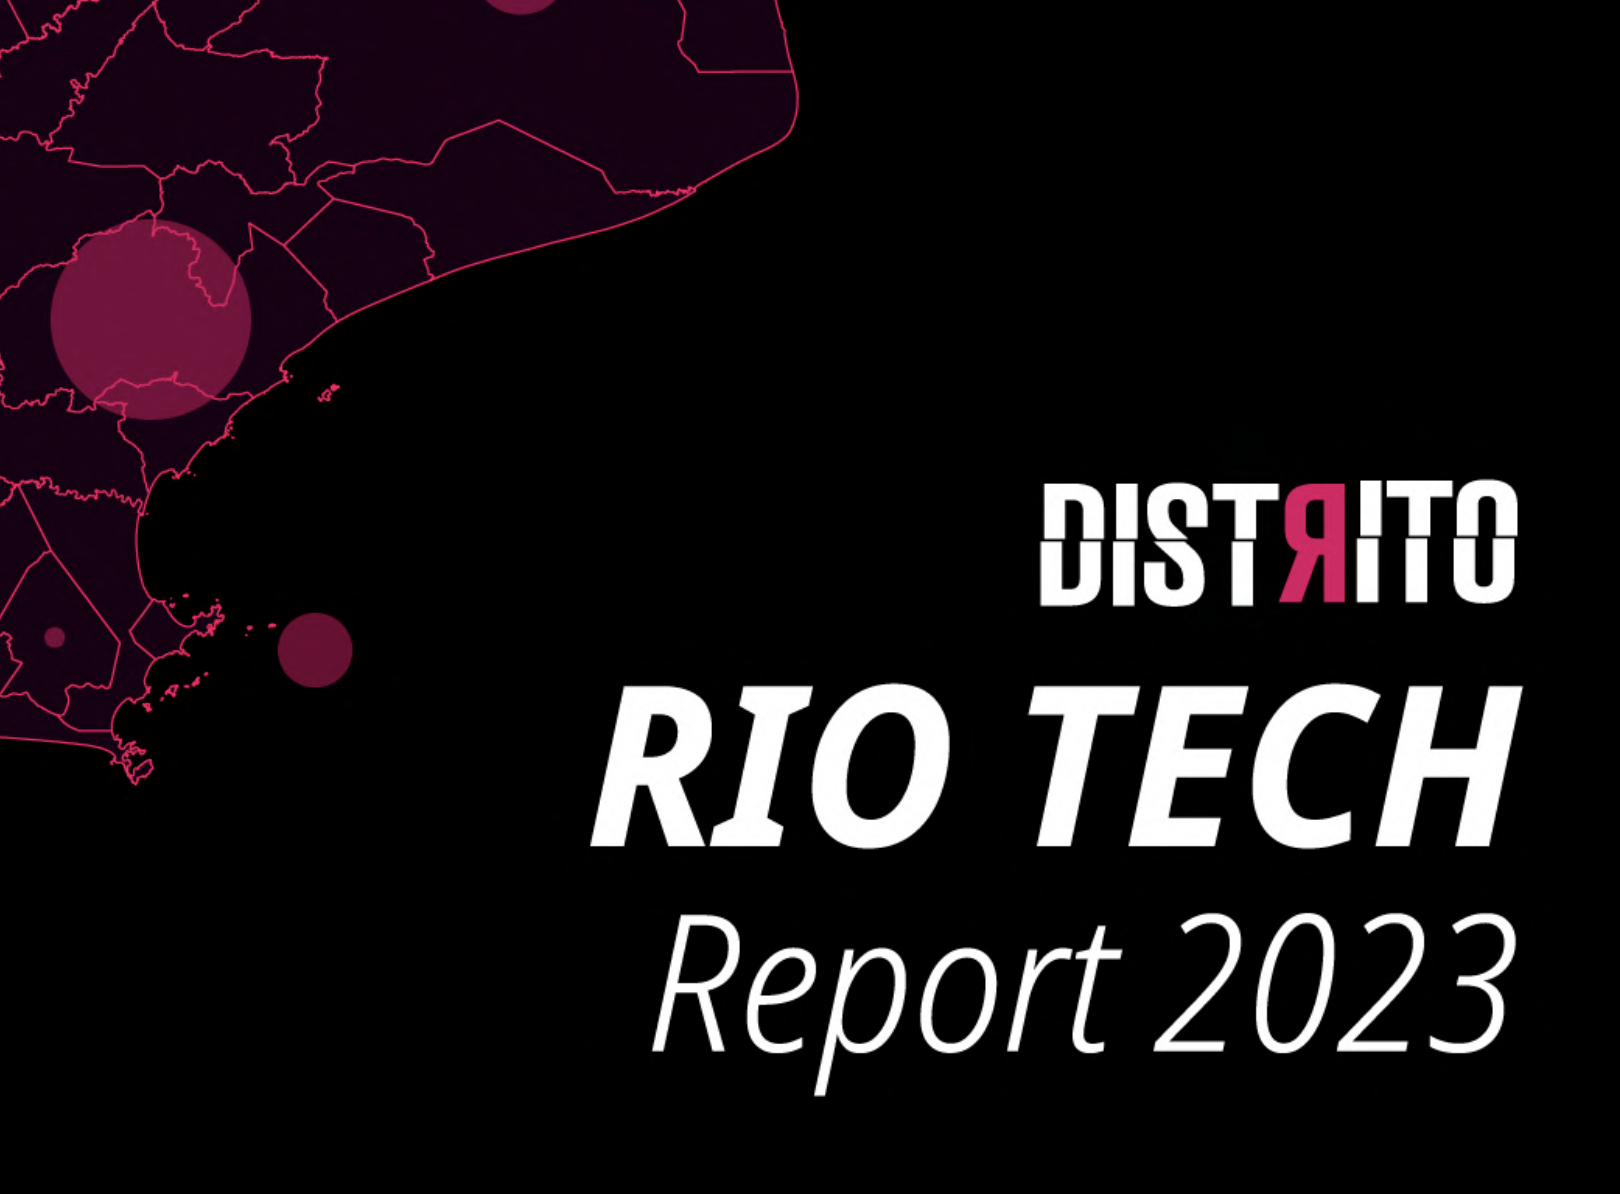 Distrito Rio Tech Report